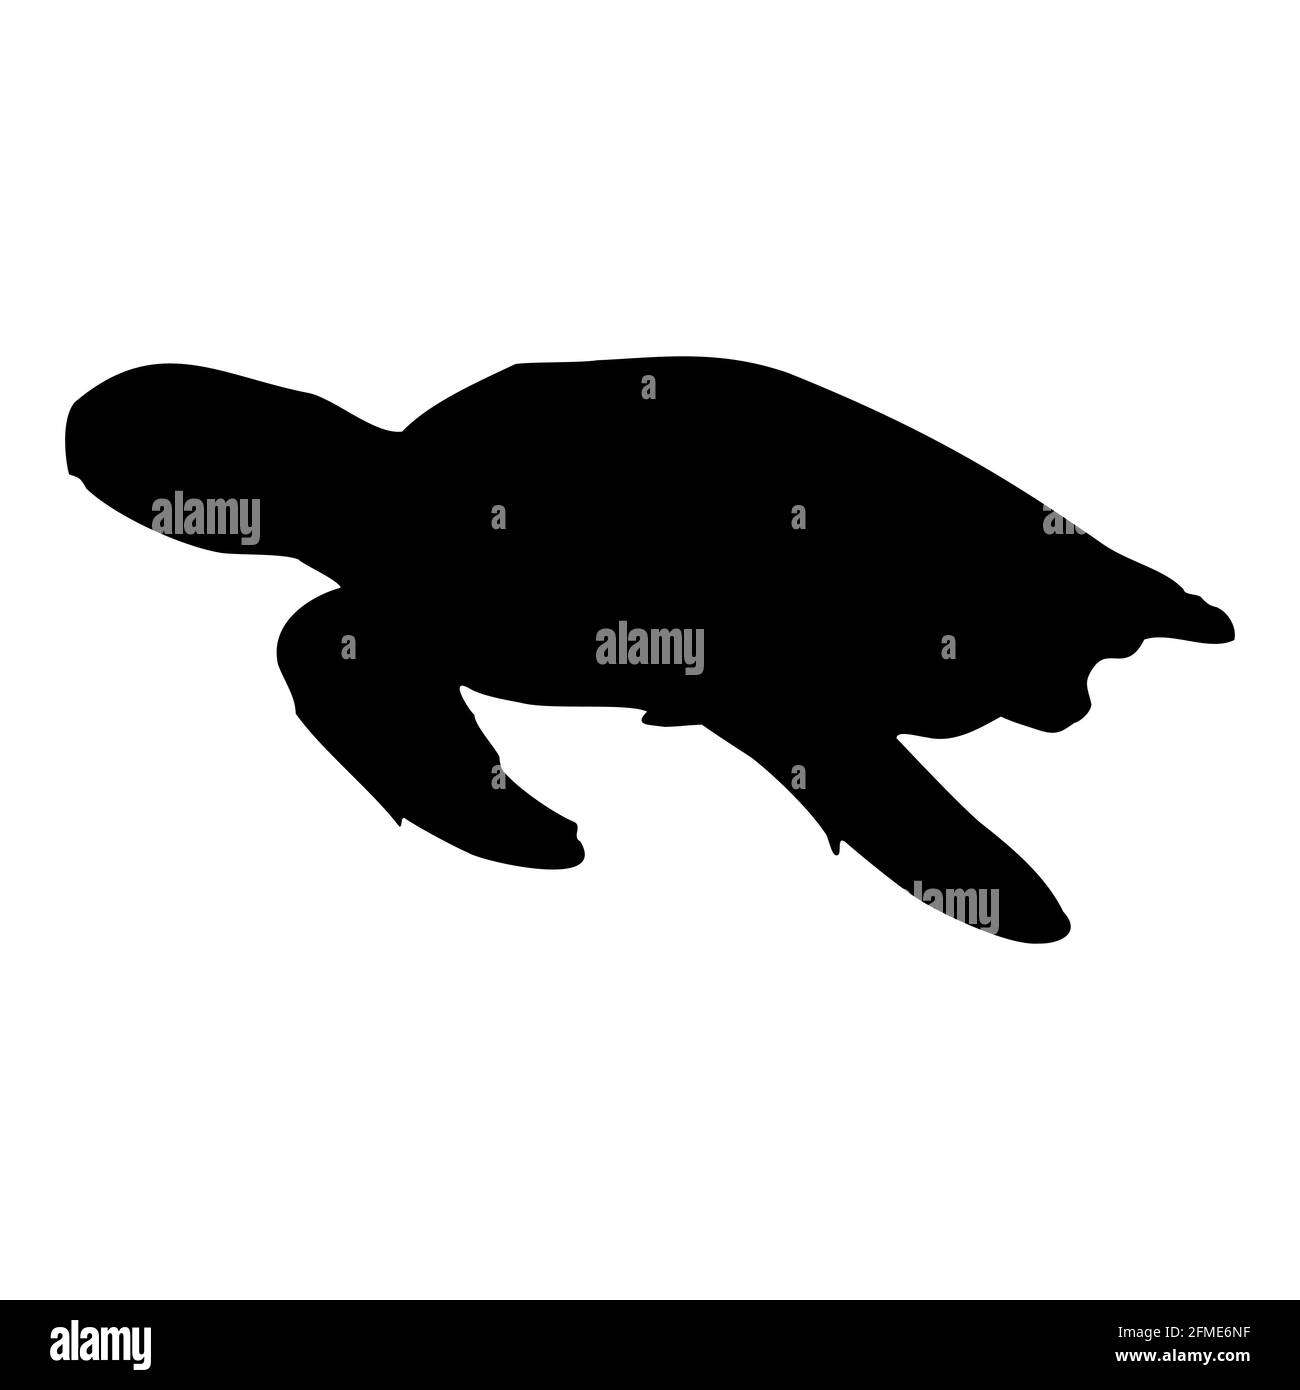 Silhouette isolée noire d'une tortue de mer sur fond blanc. Vue latérale. Vecteur de stock Clipart EPS 10. Chelonia, Eretmochelys, Natator Illustration de Vecteur